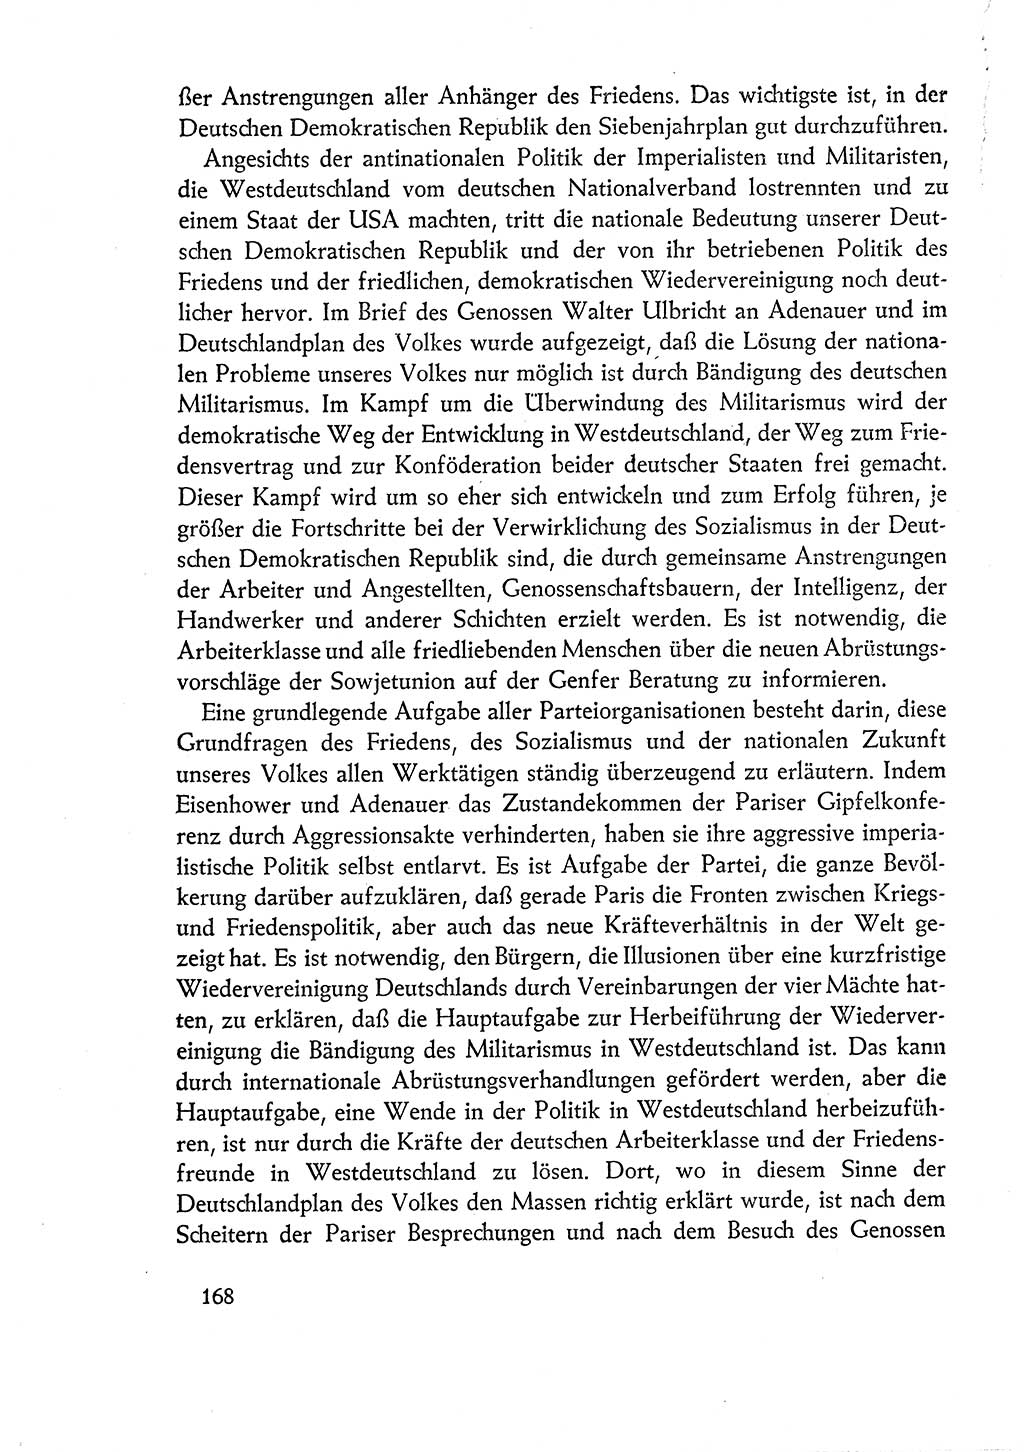 Dokumente der Sozialistischen Einheitspartei Deutschlands (SED) [Deutsche Demokratische Republik (DDR)] 1960-1961, Seite 168 (Dok. SED DDR 1960-1961, S. 168)